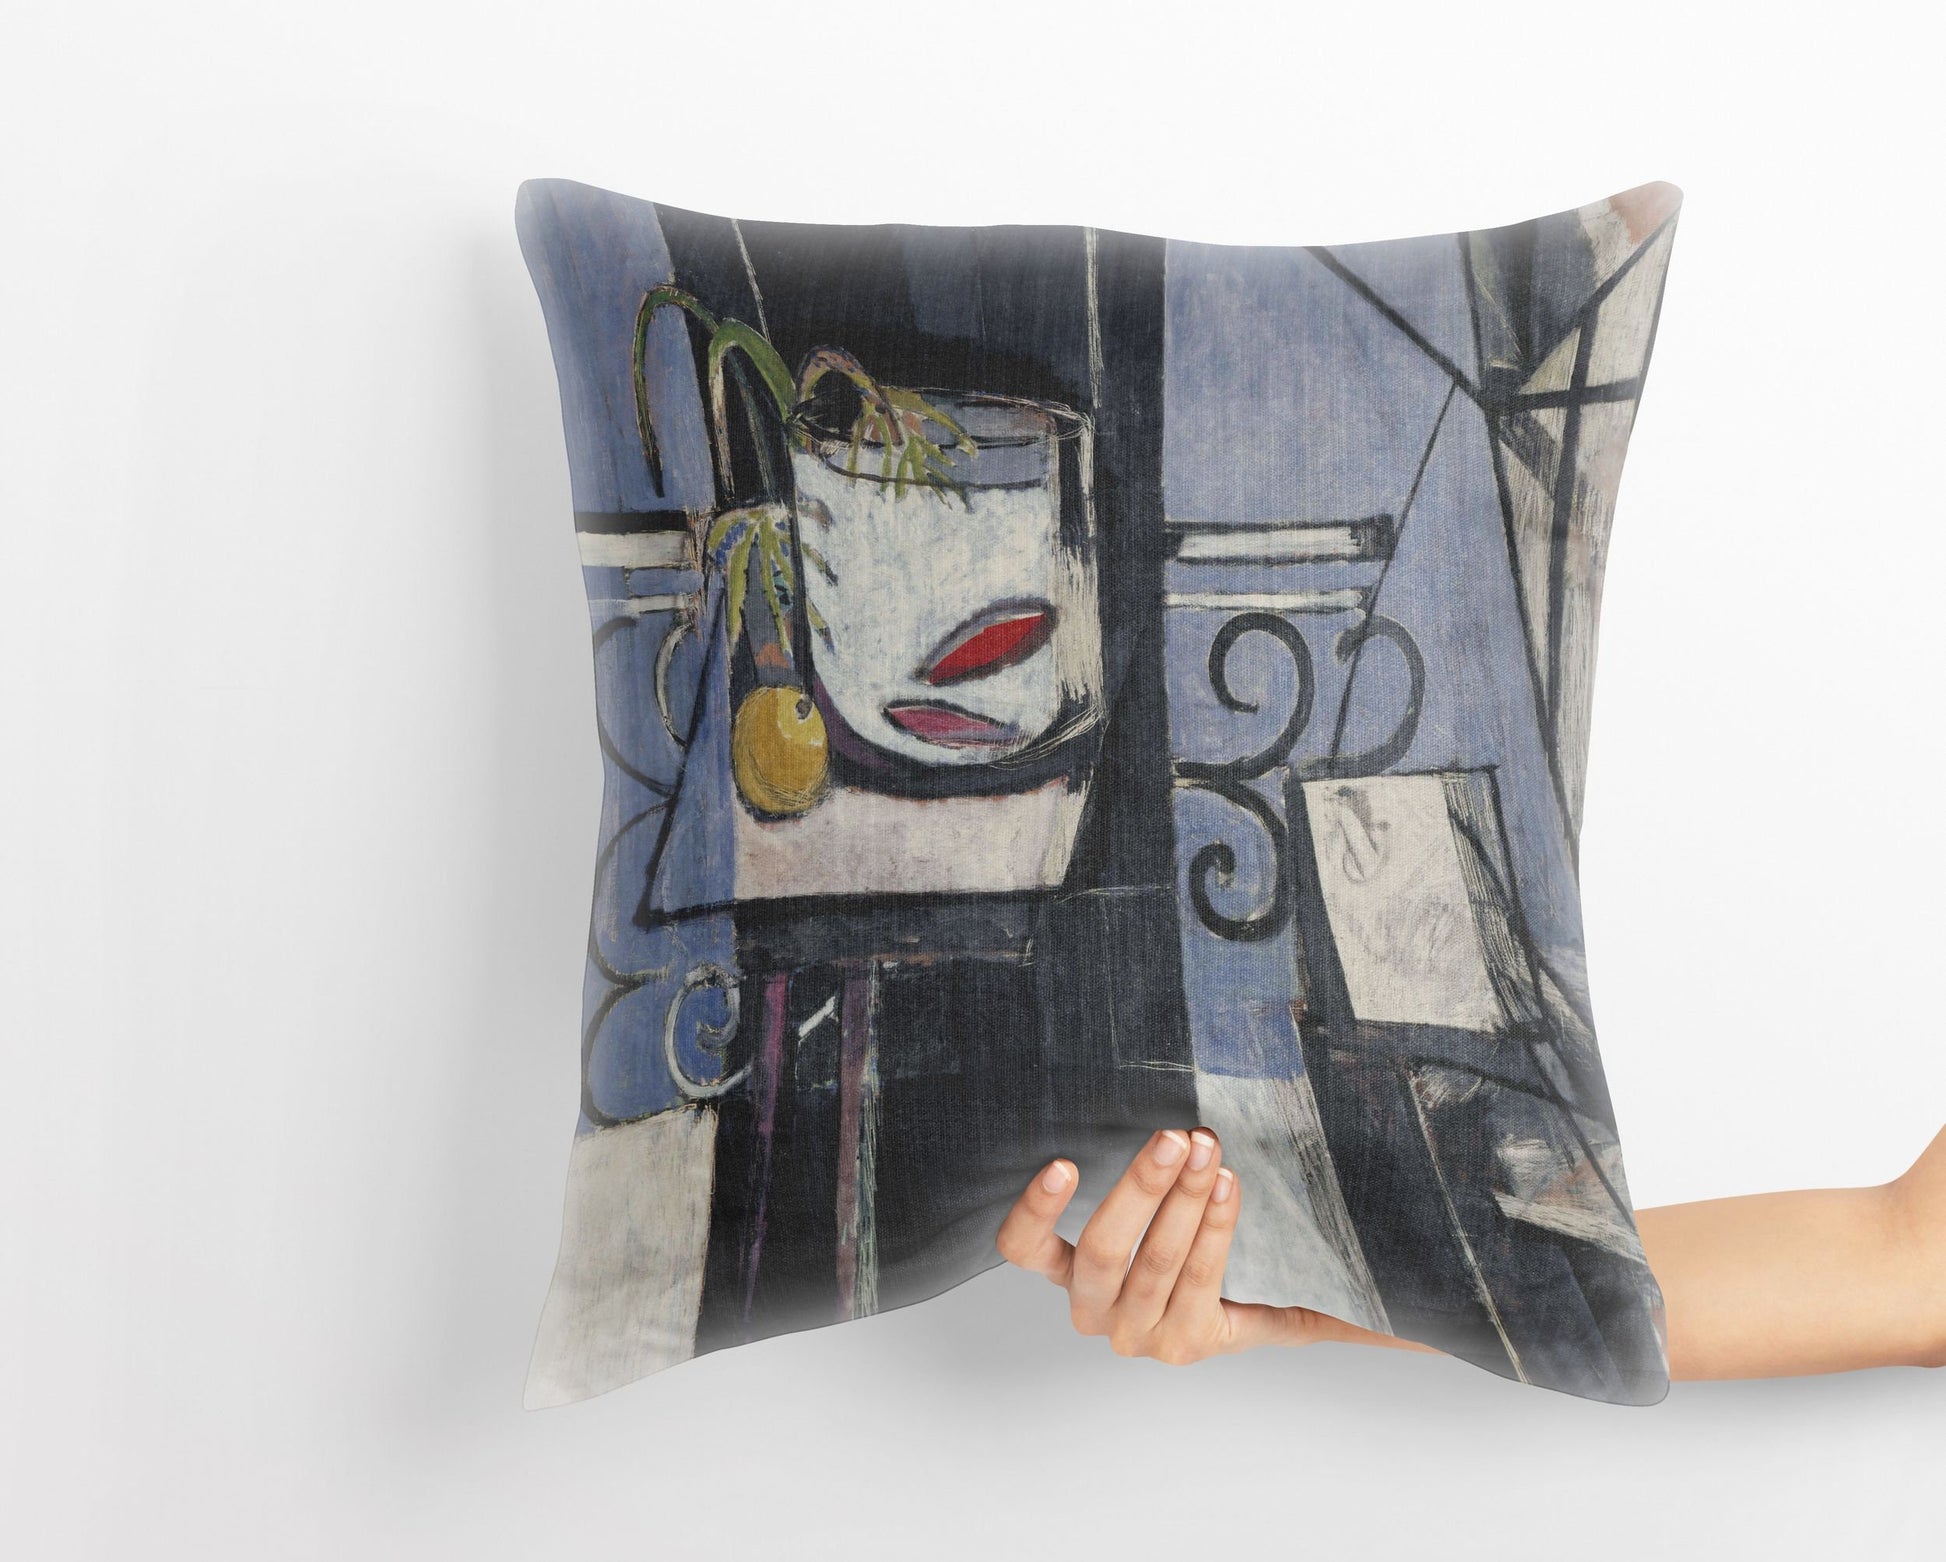 Henri Matisse Famous Painting, Toss Pillow, Abstract Pillow, Designer Pillow, Colorful Pillow Case, Modern Pillow, 22X22 Pillow Cover